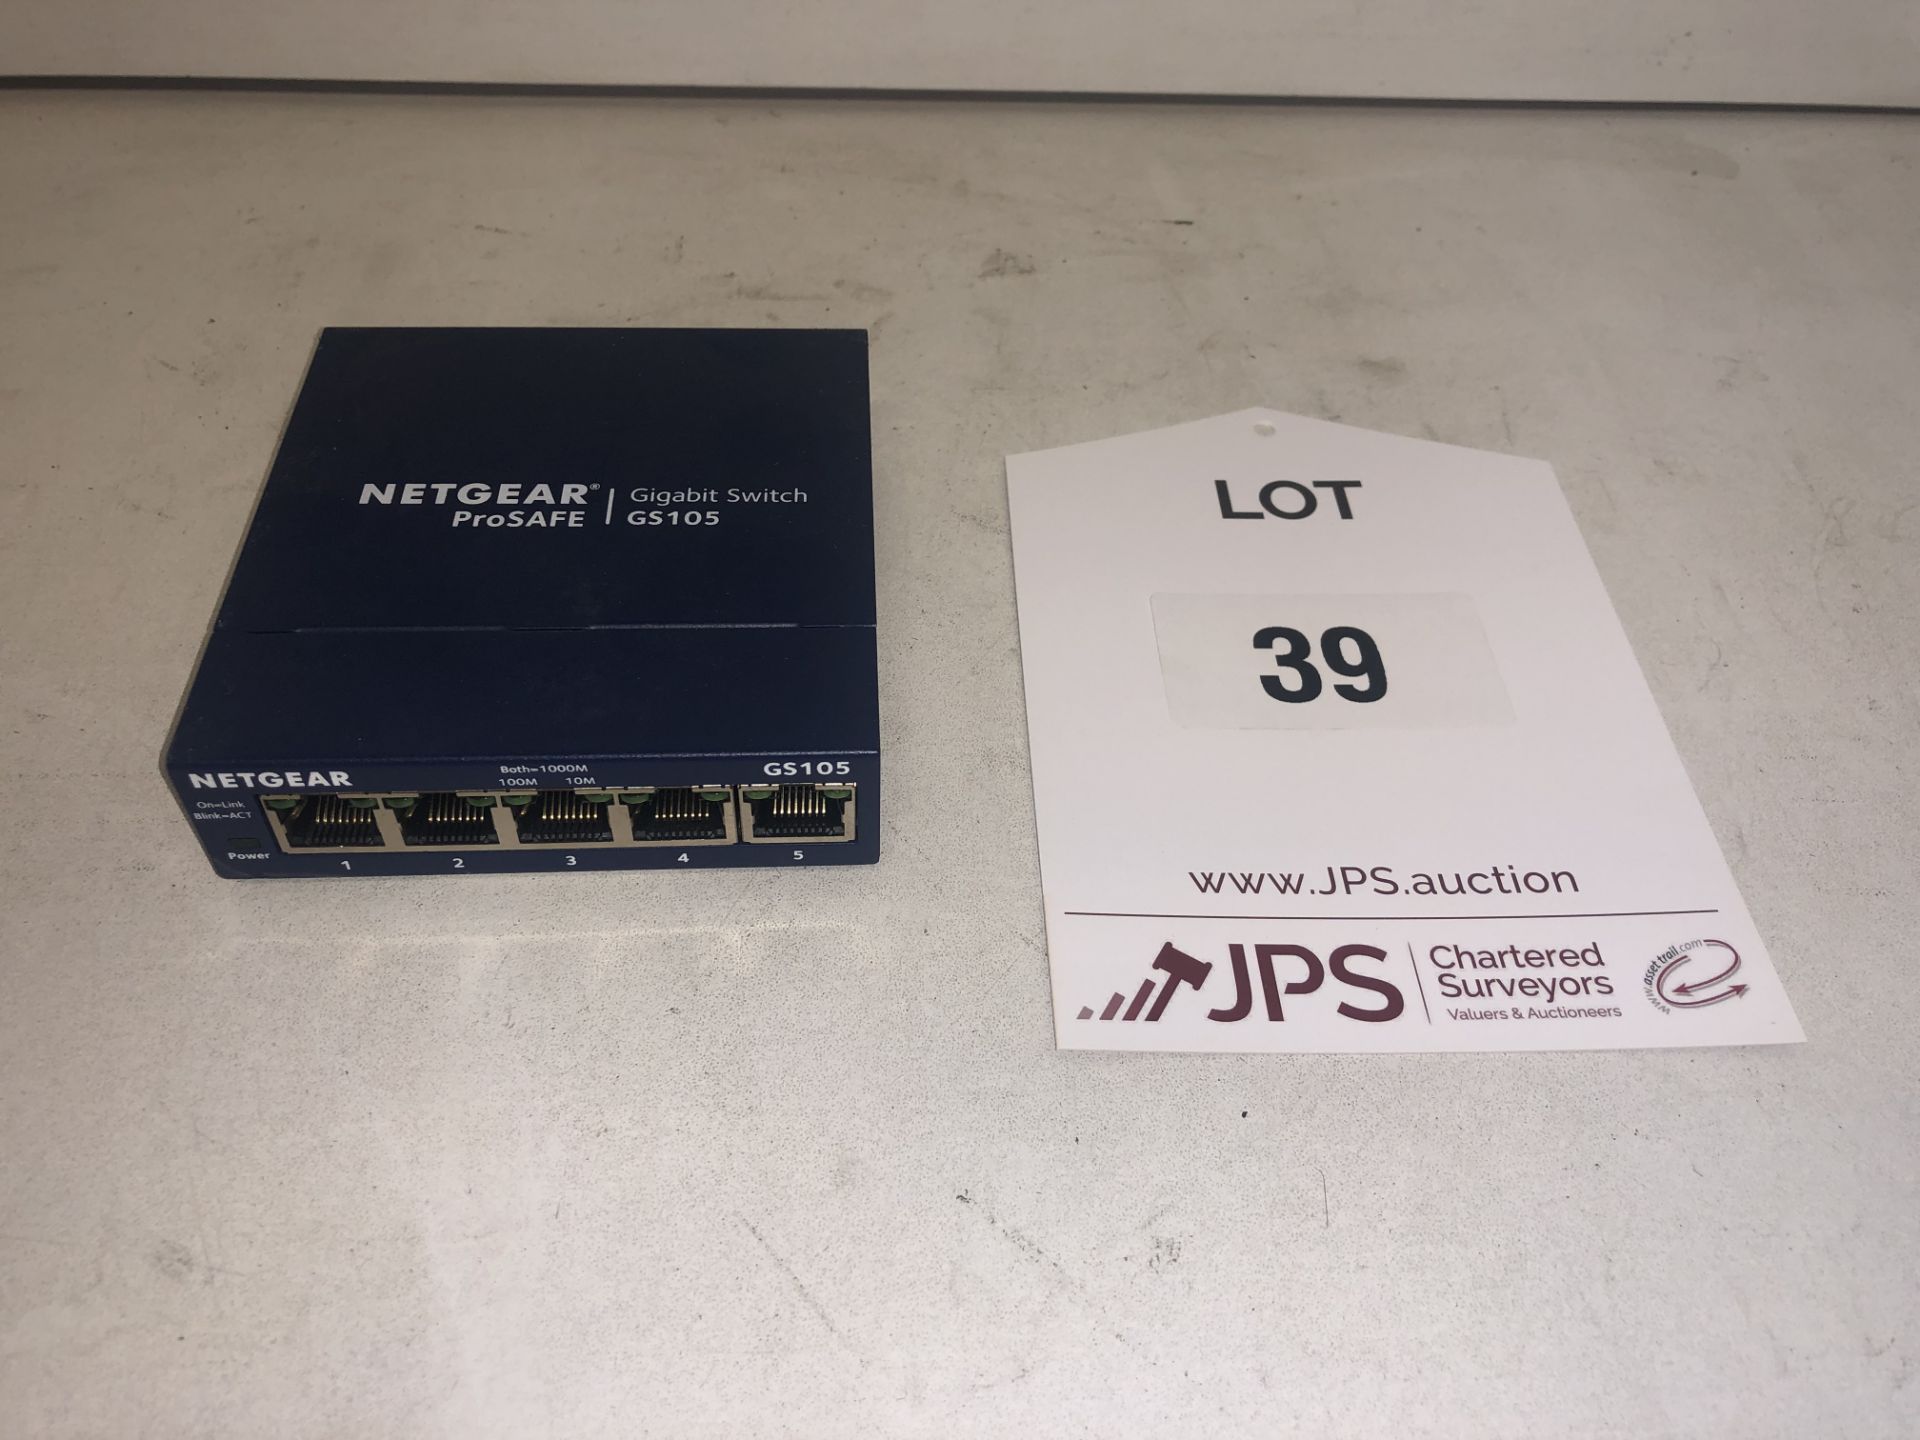 Netgear ProSAFE GS105 Gigabit Switch